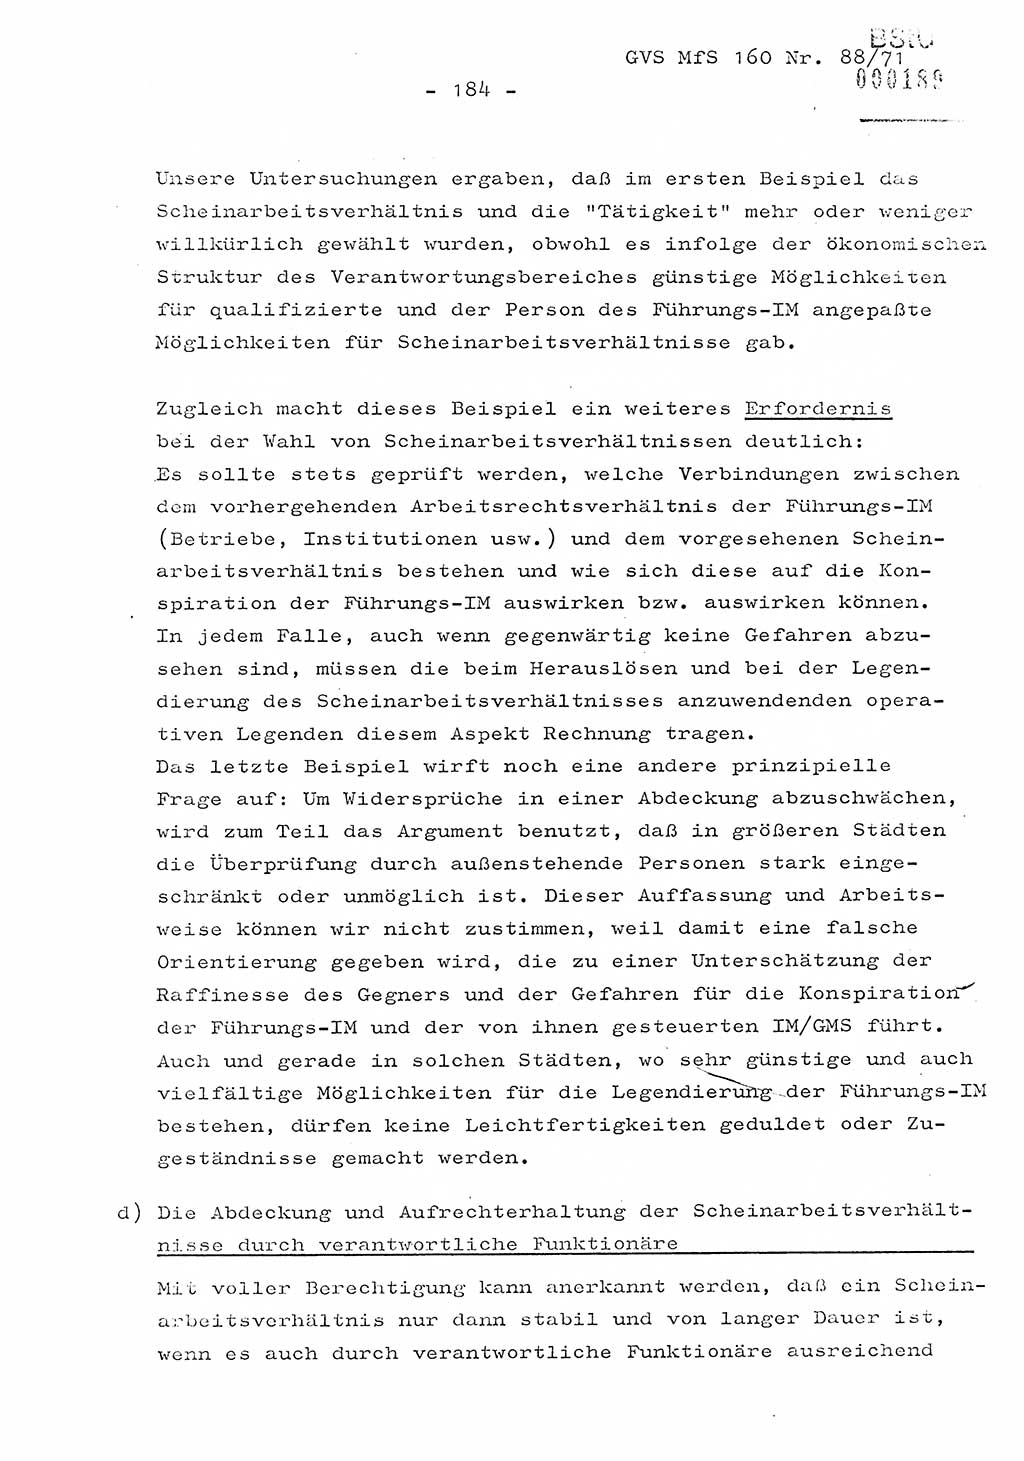 Dissertation Oberstleutnant Josef Schwarz (BV Schwerin), Major Fritz Amm (JHS), Hauptmann Peter Gräßler (JHS), Ministerium für Staatssicherheit (MfS) [Deutsche Demokratische Republik (DDR)], Juristische Hochschule (JHS), Geheime Verschlußsache (GVS) 160-88/71, Potsdam 1972, Seite 184 (Diss. MfS DDR JHS GVS 160-88/71 1972, S. 184)